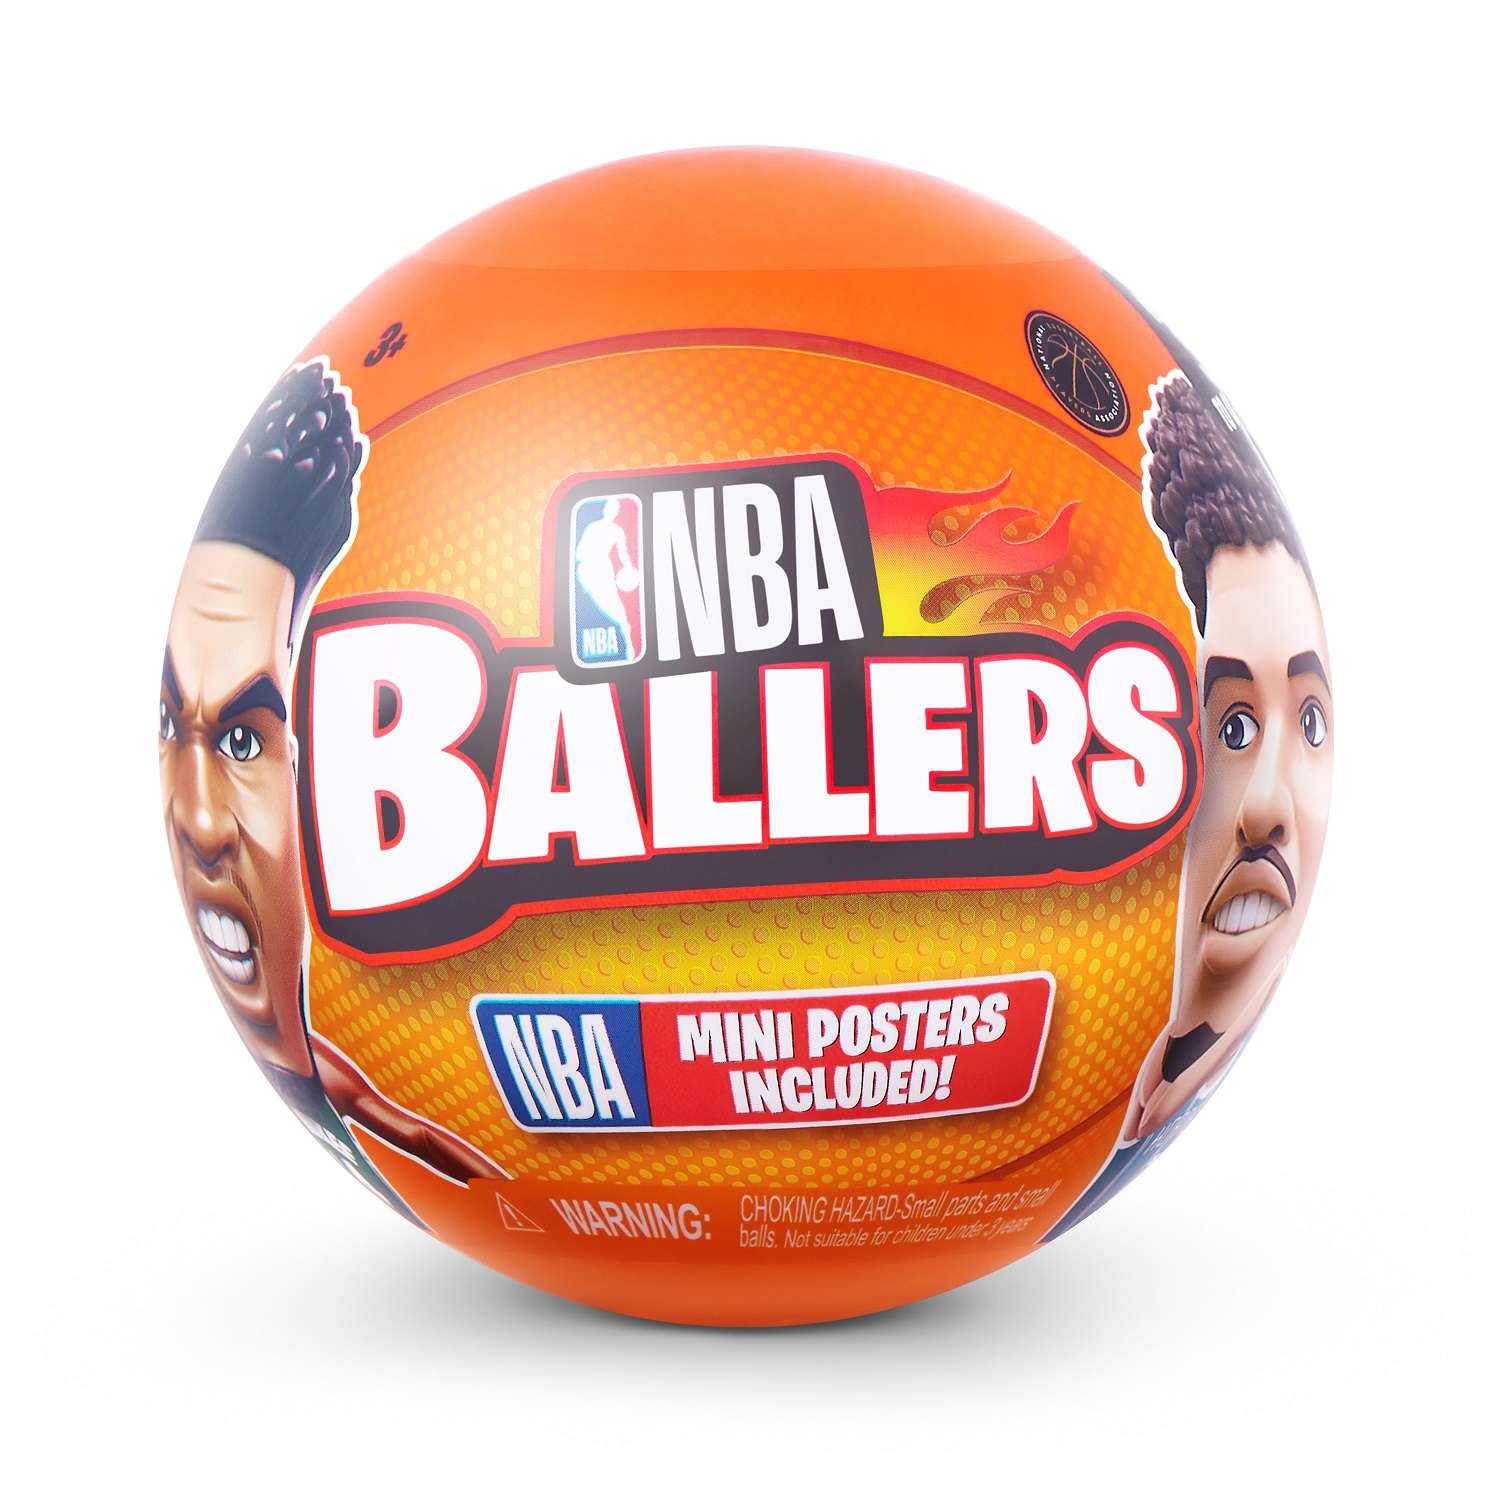 Игрушка Zuru 5 surprise NBA Ballers Шар в непрозрачной упаковке (Сюрприз) 77490GQ4-S002 - фото 8